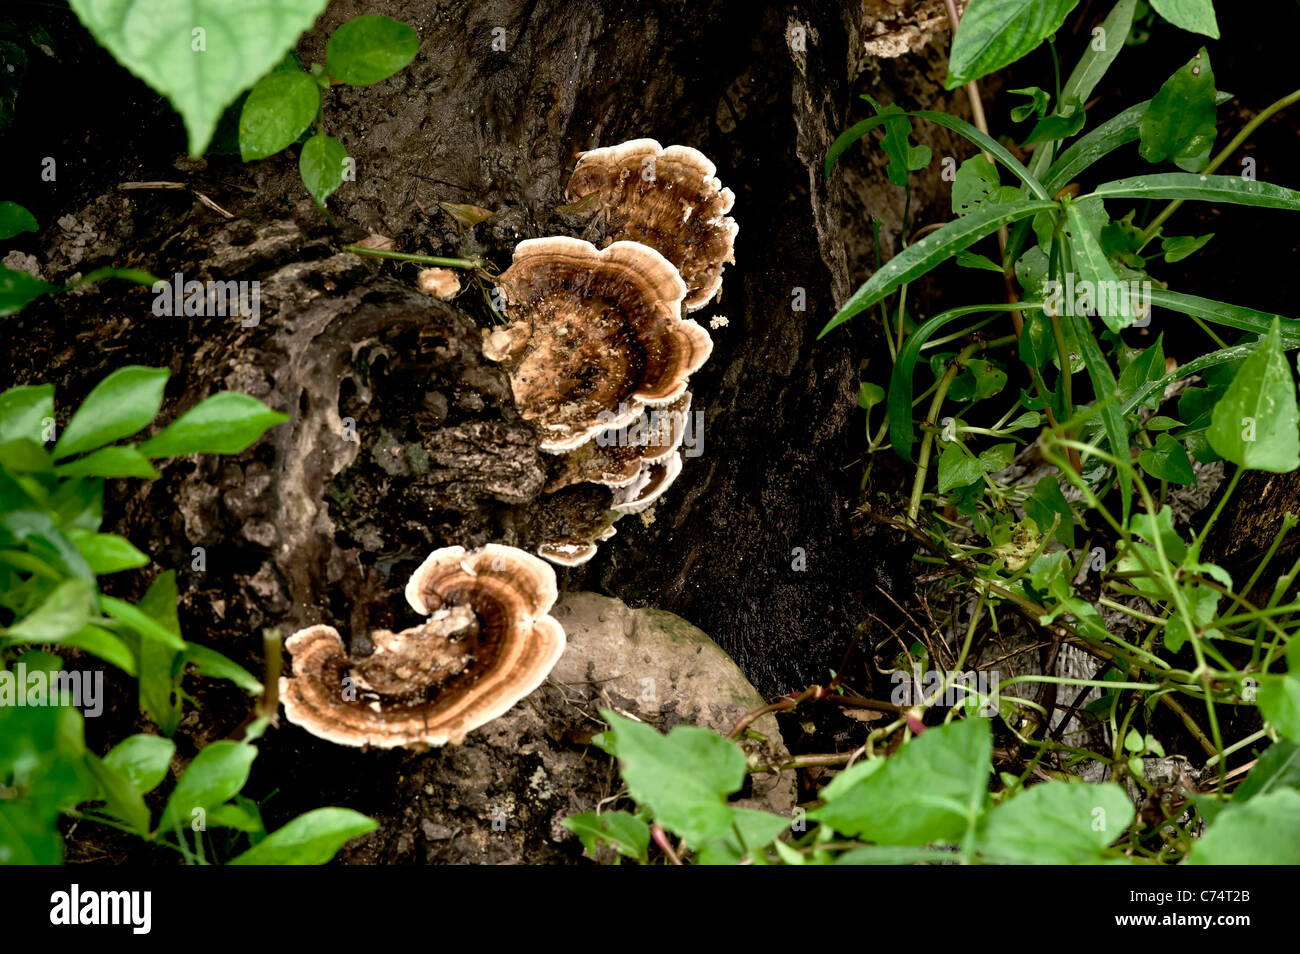 Bosque Fungii (tierra) (WOP) (p.h) especies -Phaelolus deadtree schweinitzii de tronco a sal-India Lake-Kolkata . Foto de stock